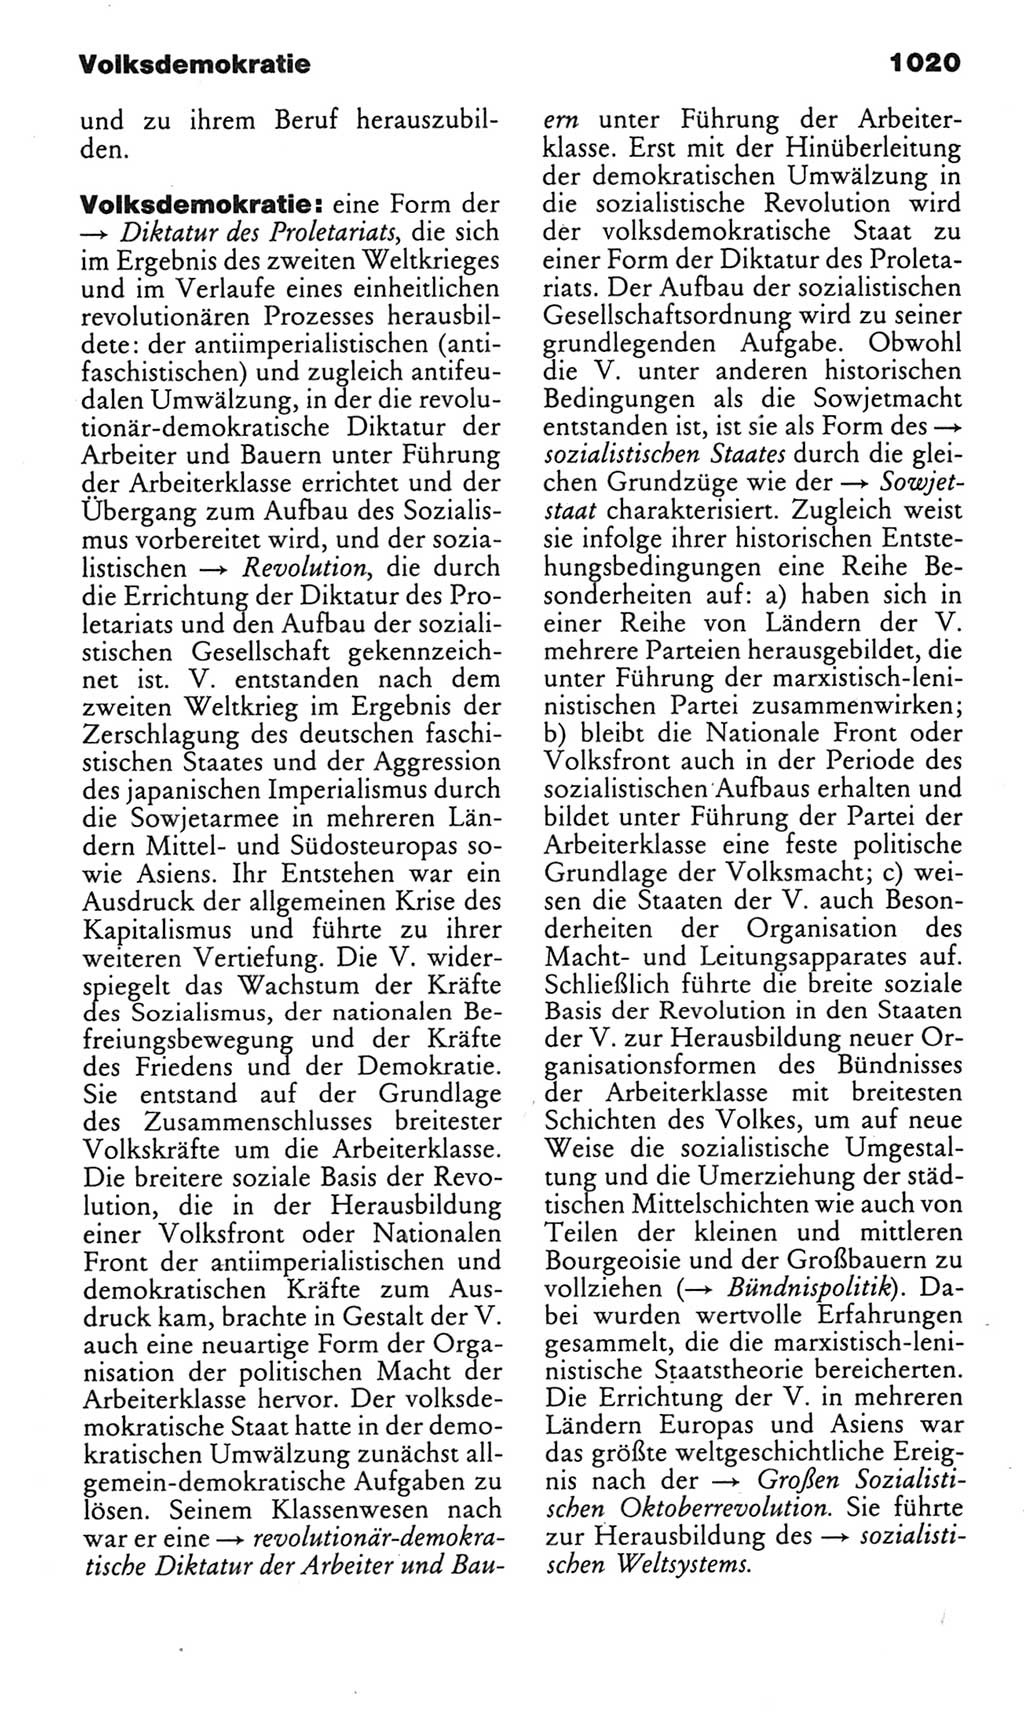 Kleines politisches Wörterbuch [Deutsche Demokratische Republik (DDR)] 1985, Seite 1020 (Kl. pol. Wb. DDR 1985, S. 1020)